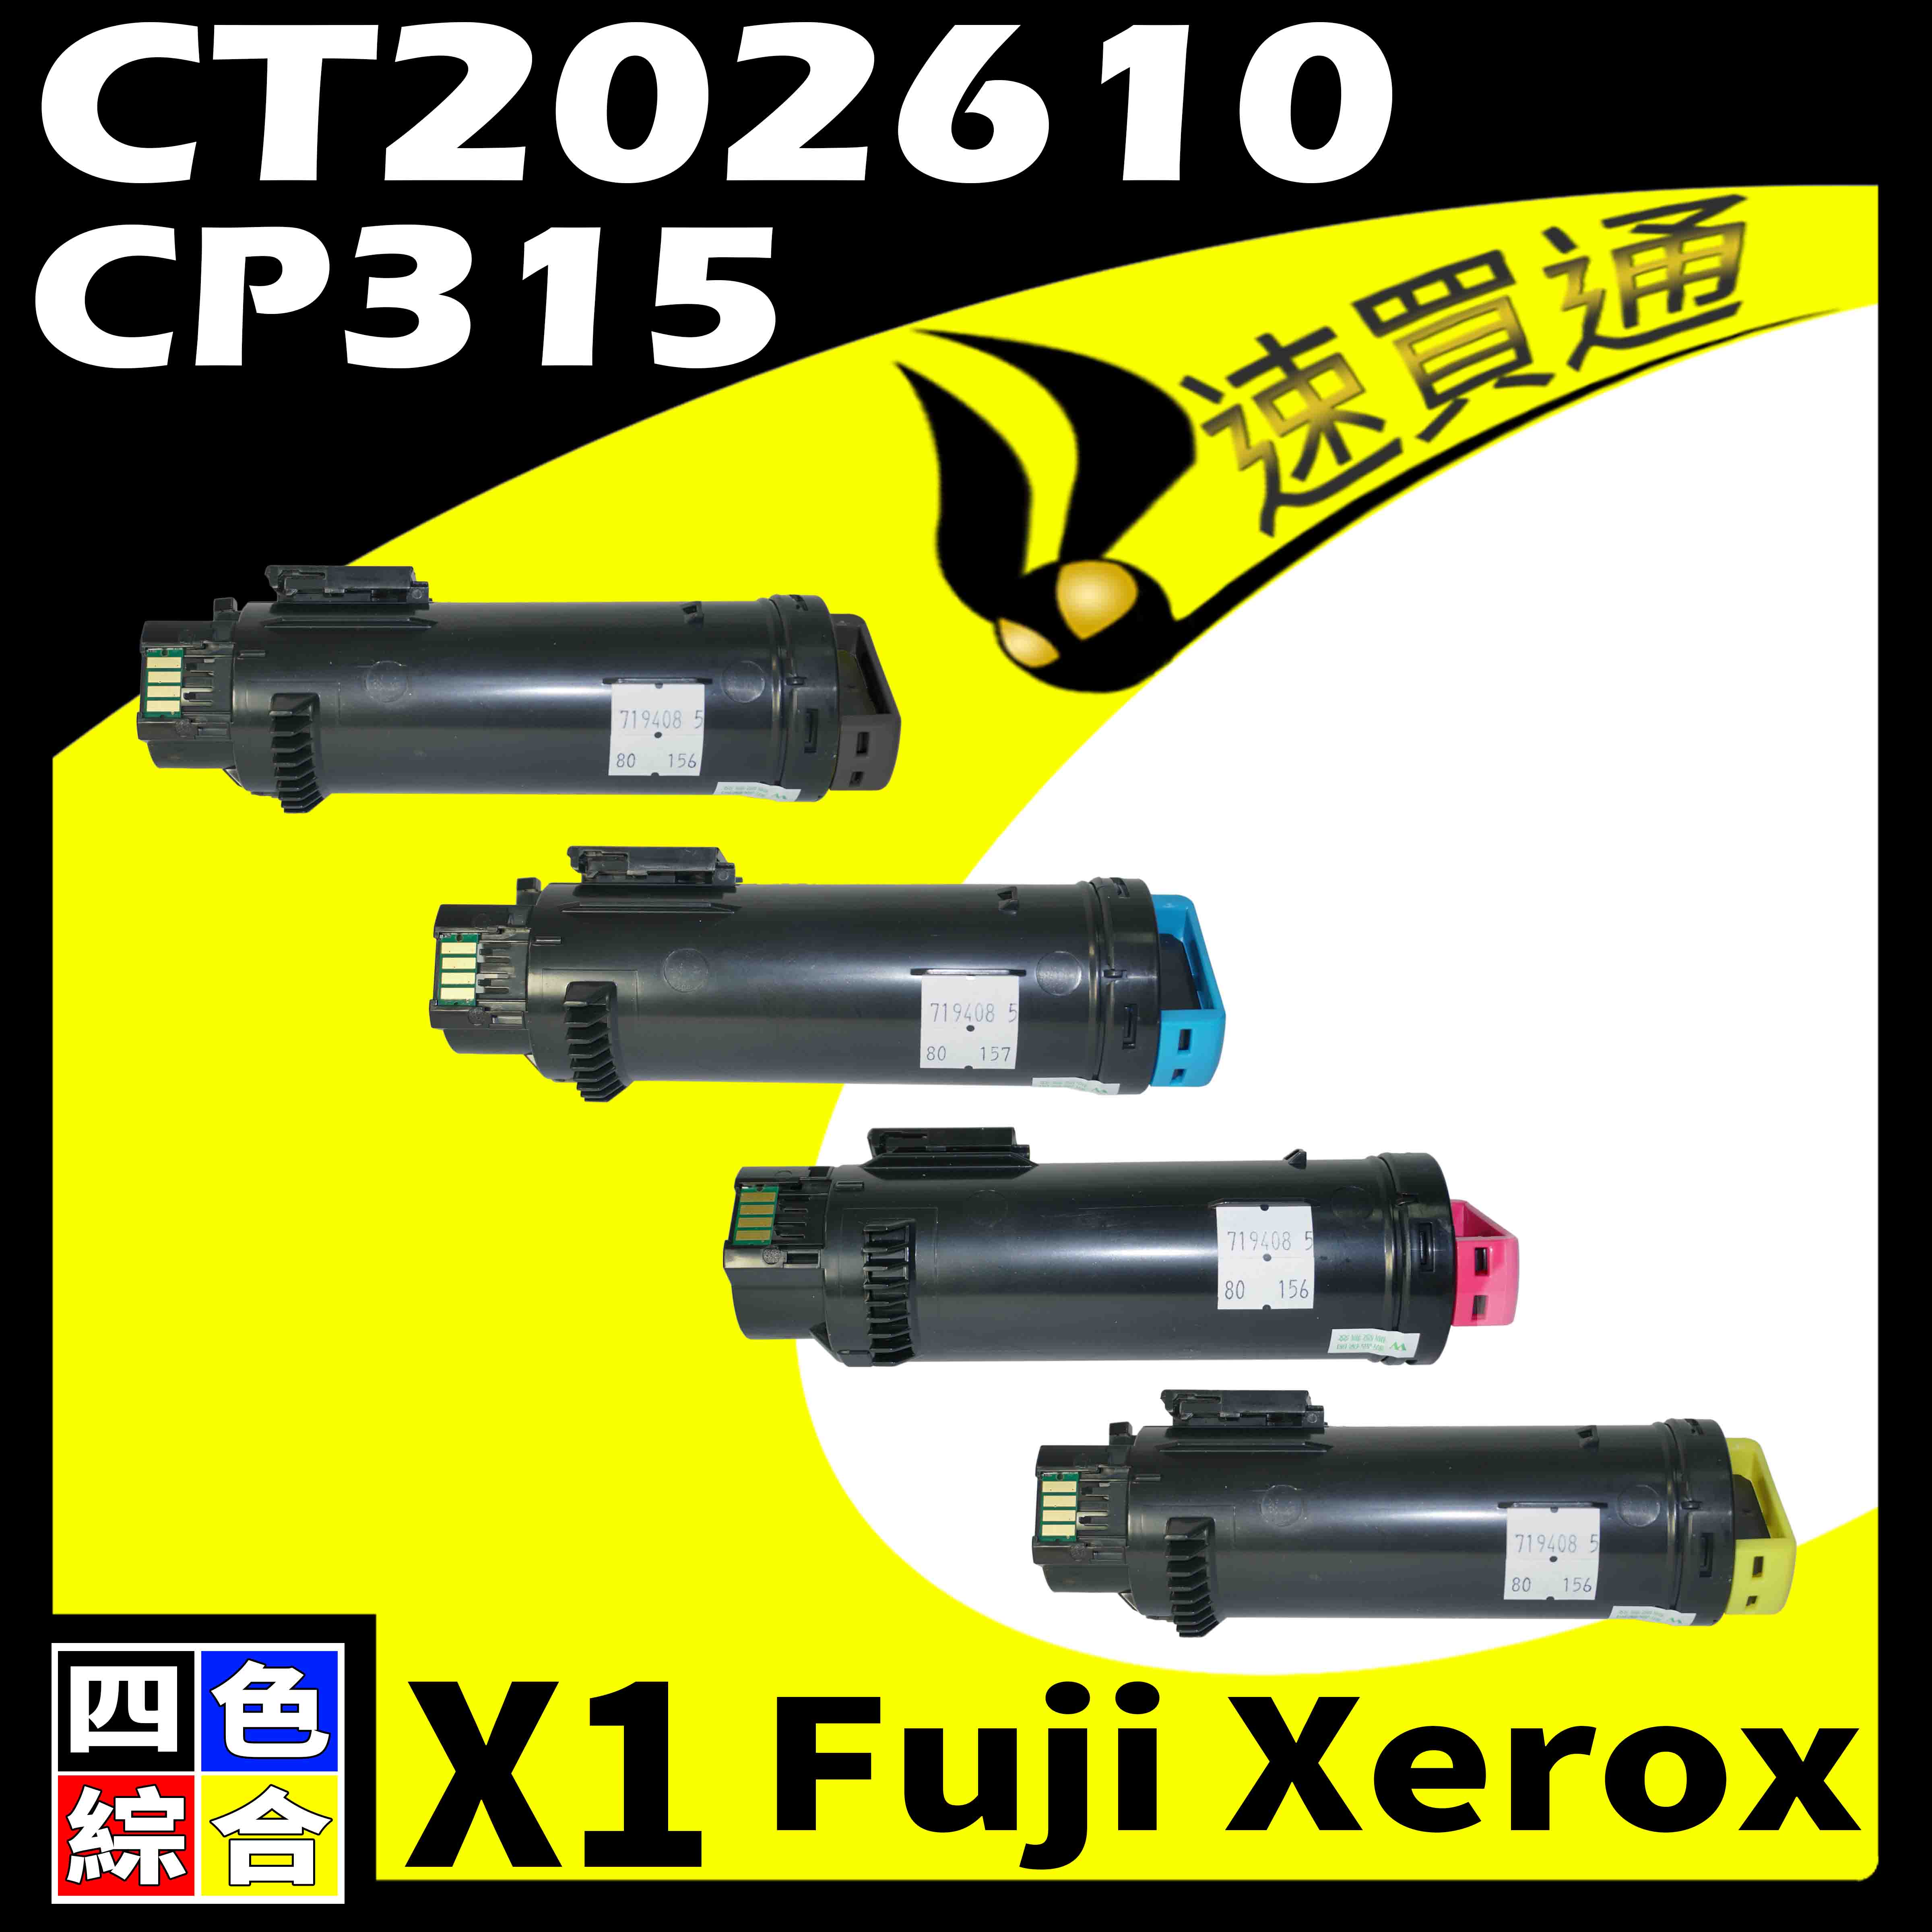 【速買通】Fuji Xerox CP315/CT202610 四色 相容彩色碳粉匣 適用 CM315Z/CP315DW